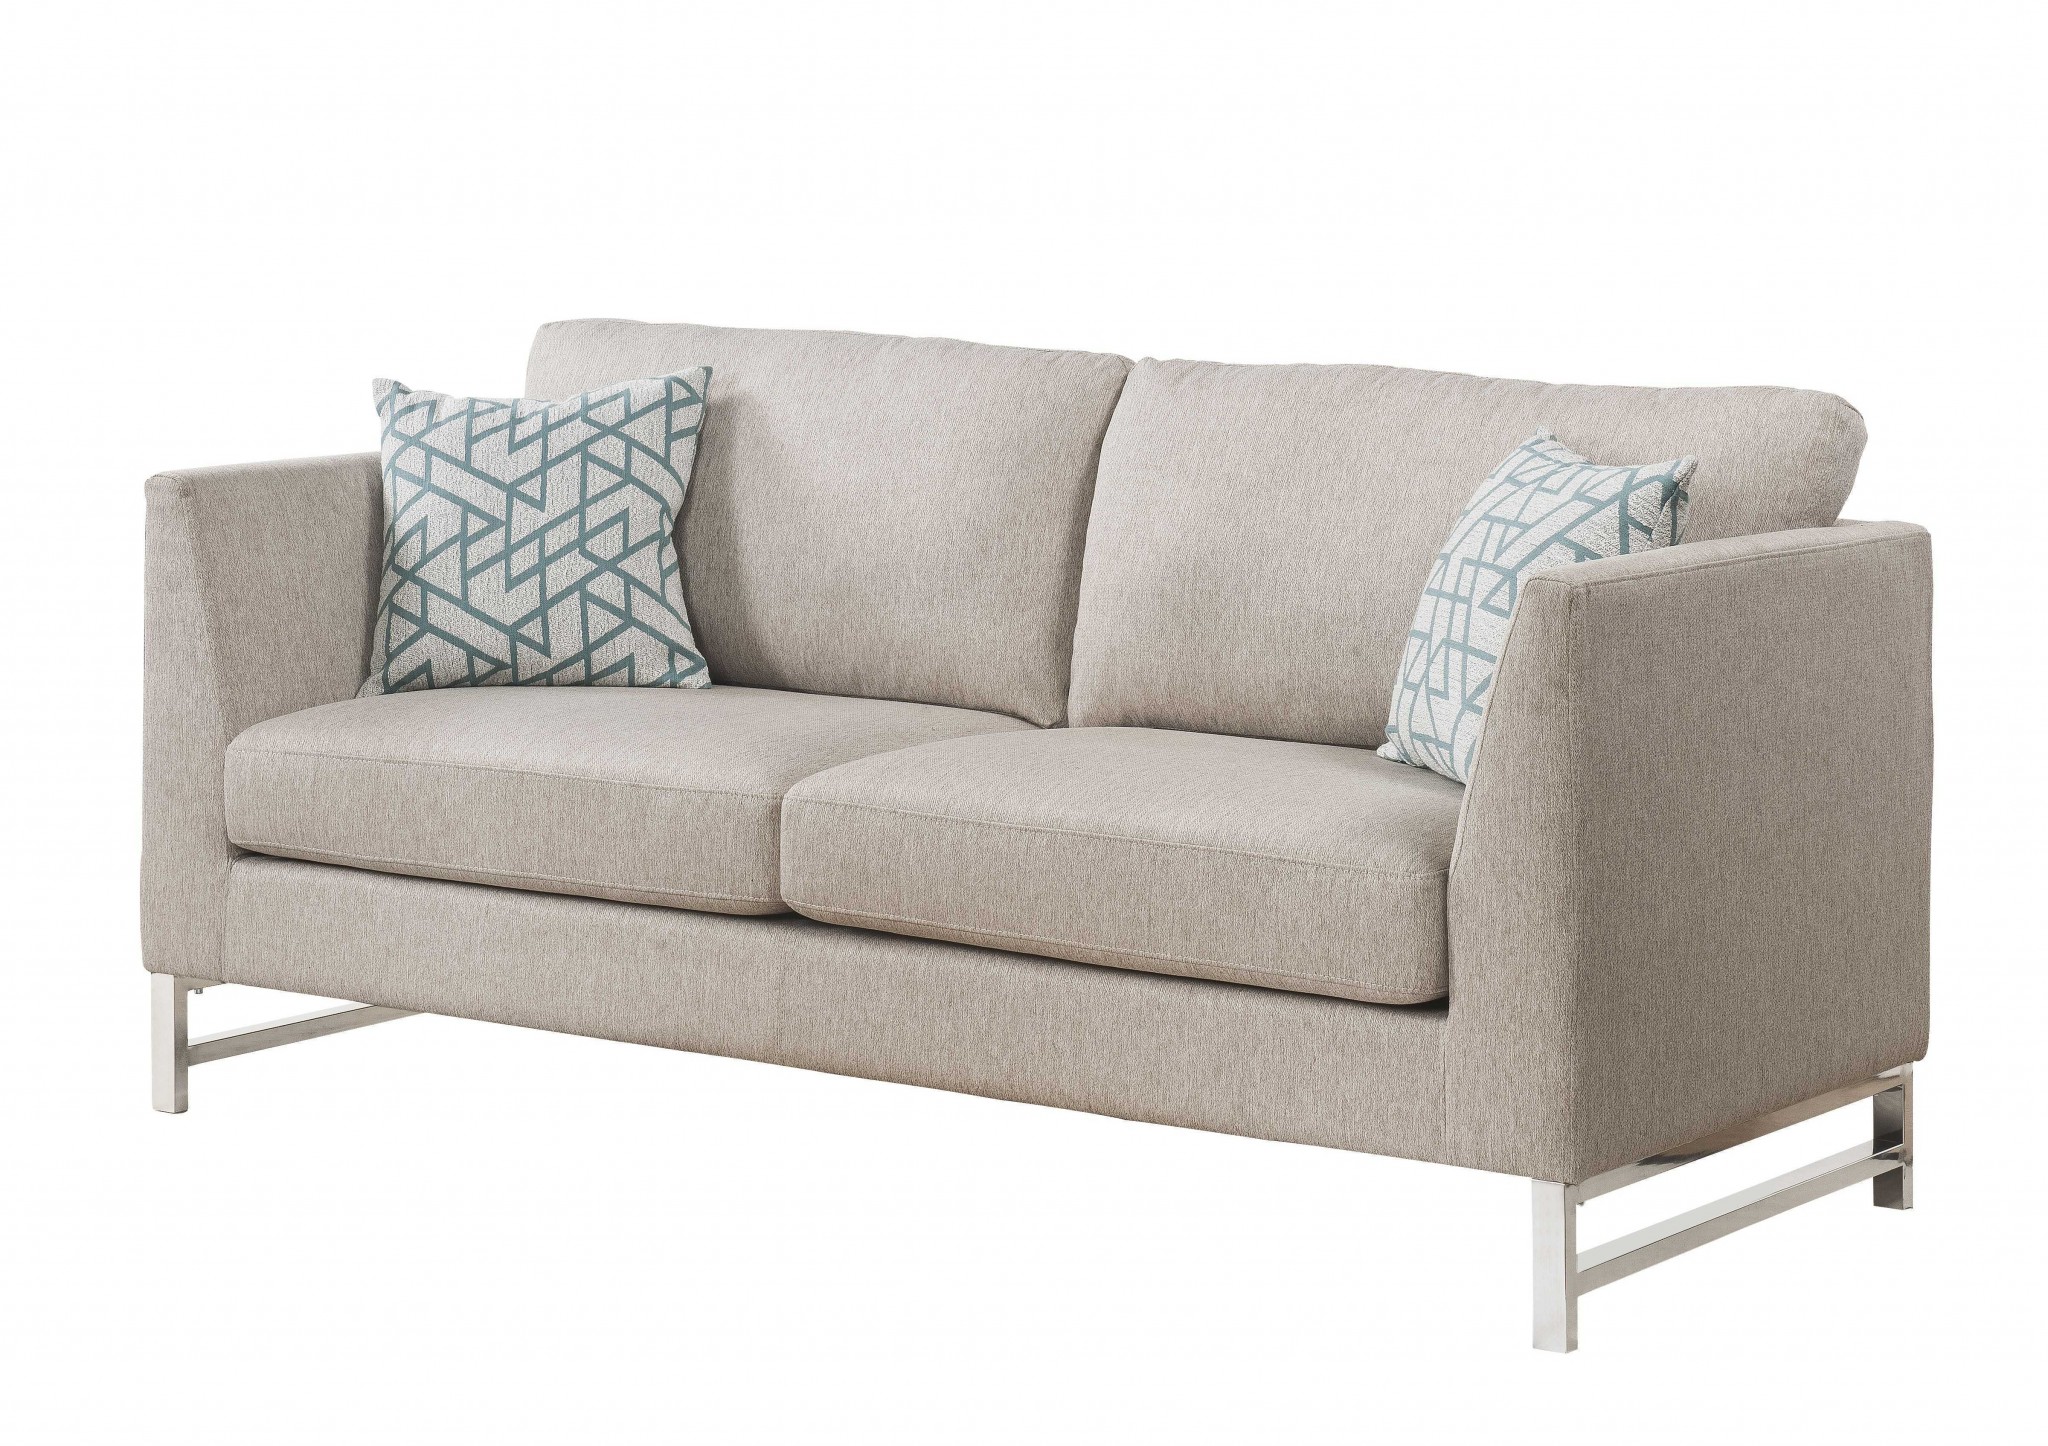 35" X 78" X 36" Beige Linen Upholstery Metal Leg Sofa w/2 Pillows